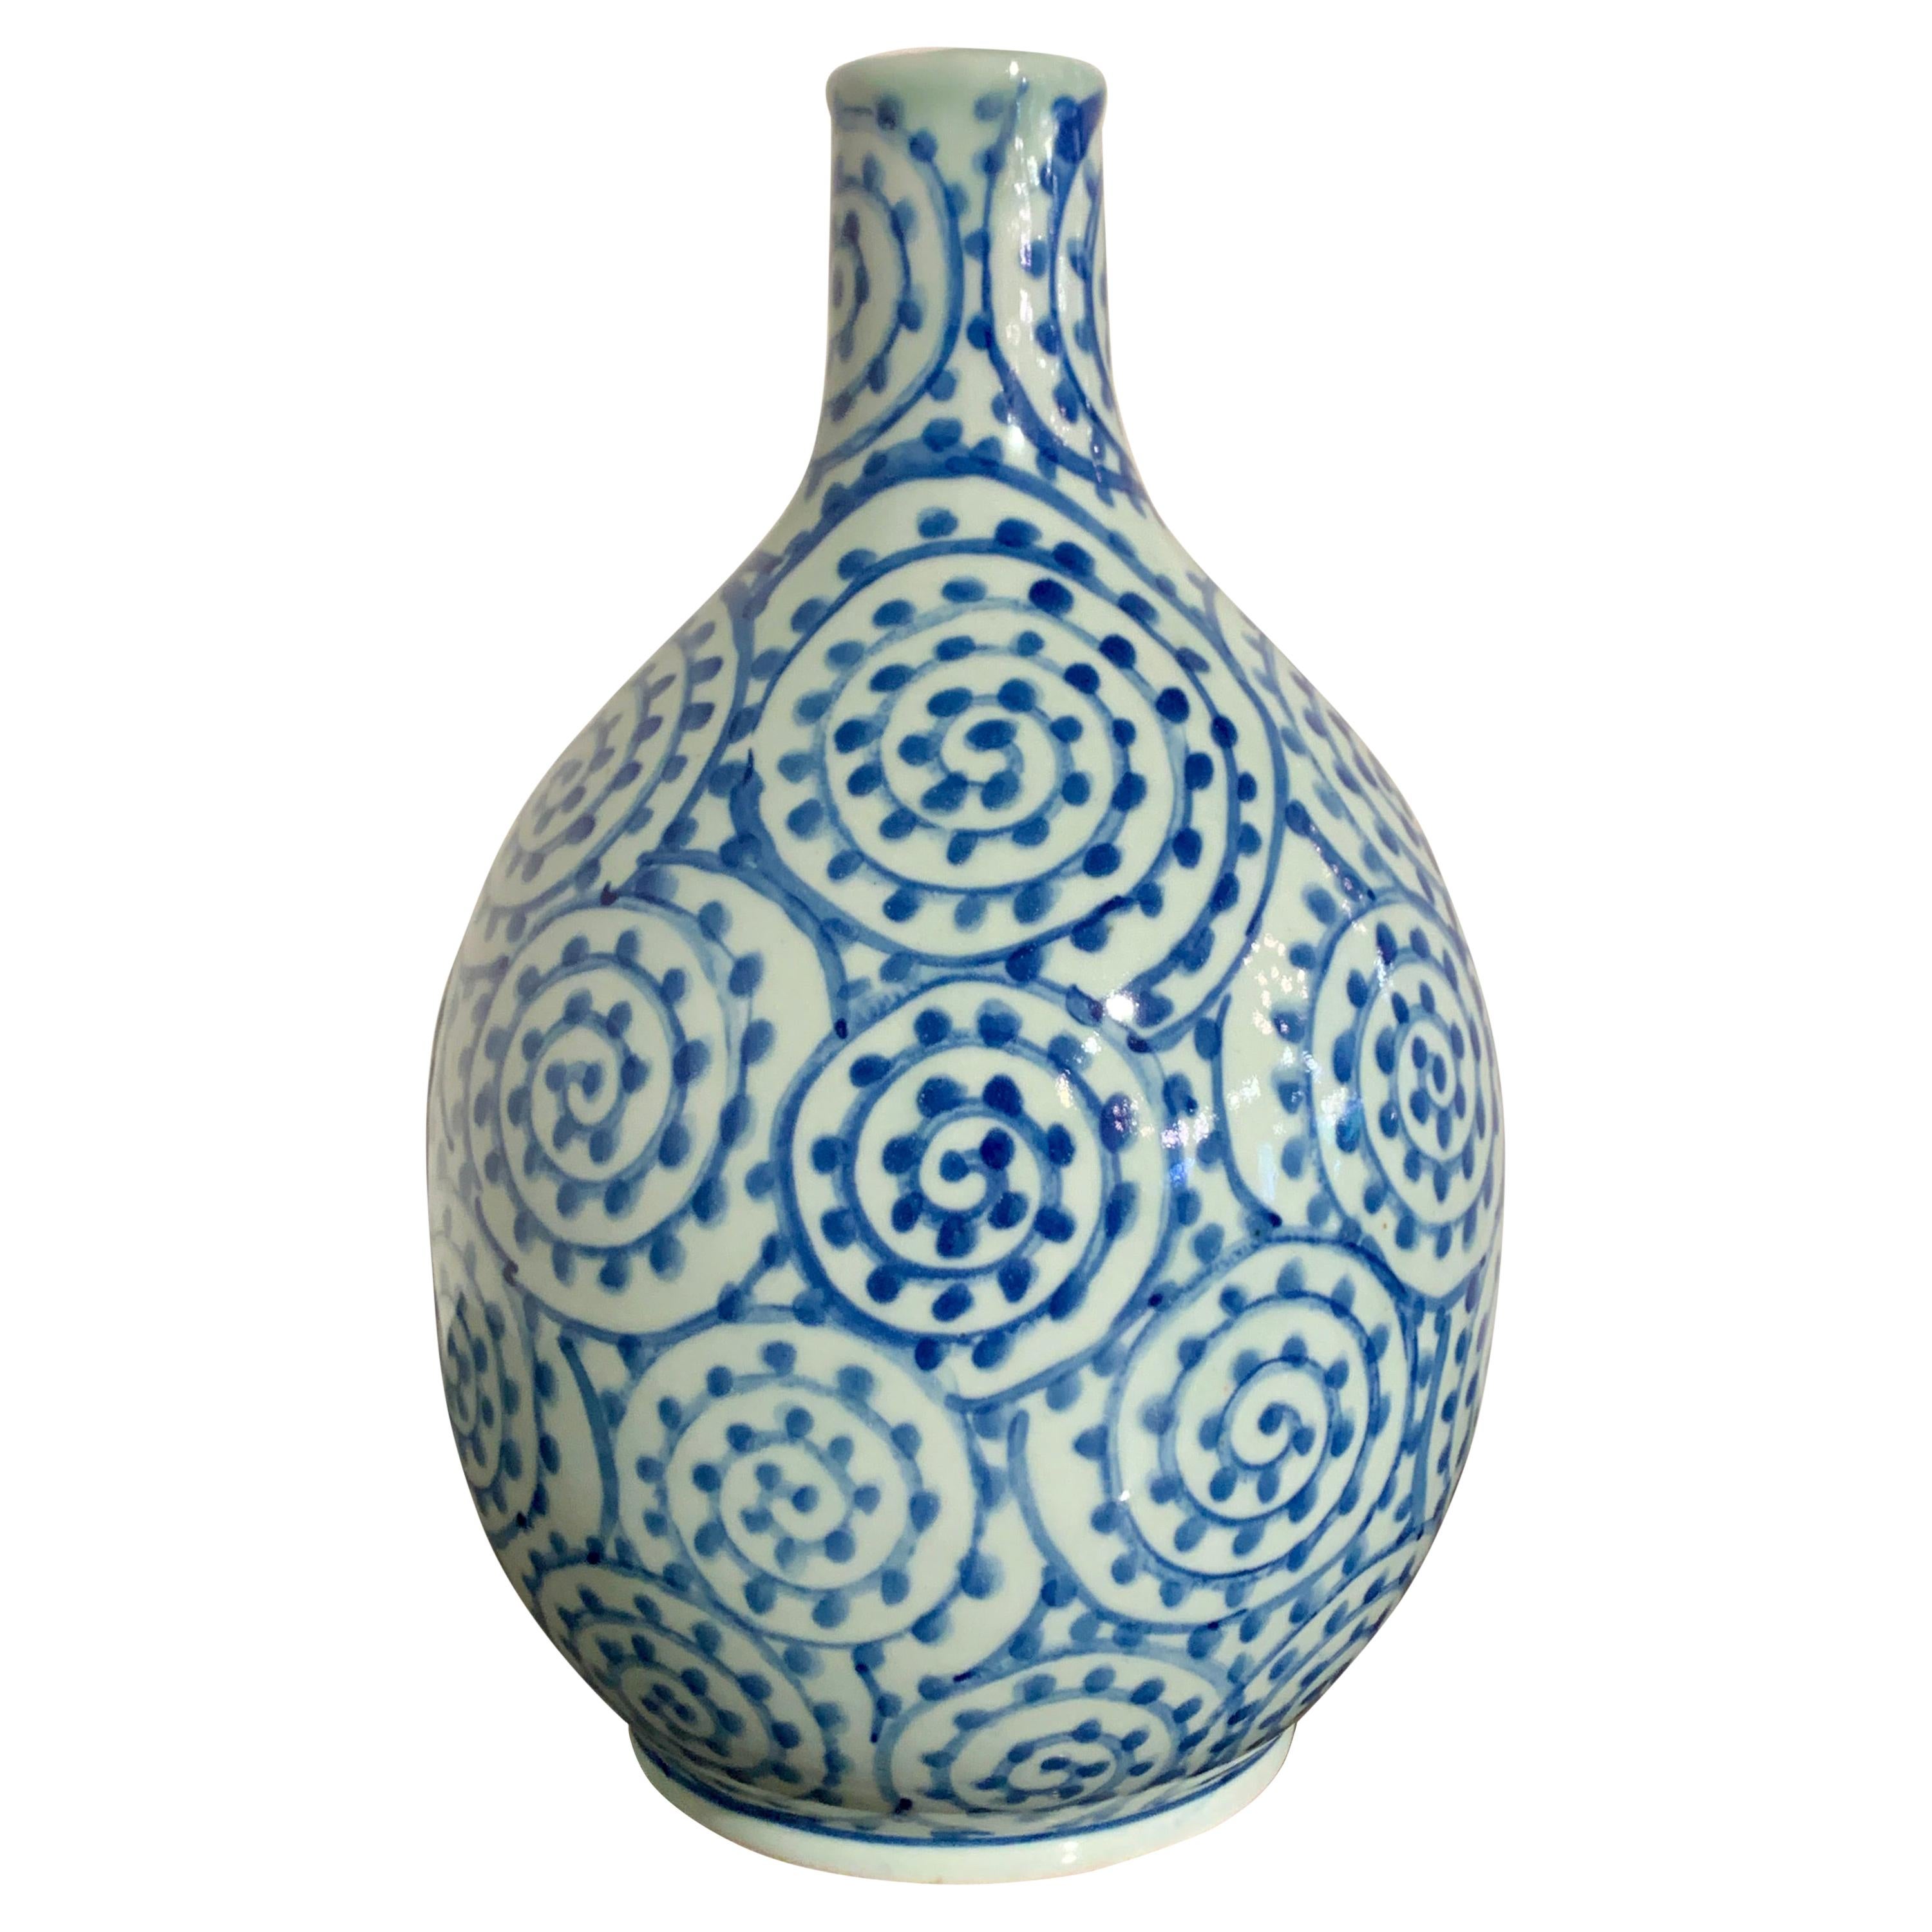 Japanese Blue and White Porcelain Bottle Vase, Showa Era, Mid 20th Century